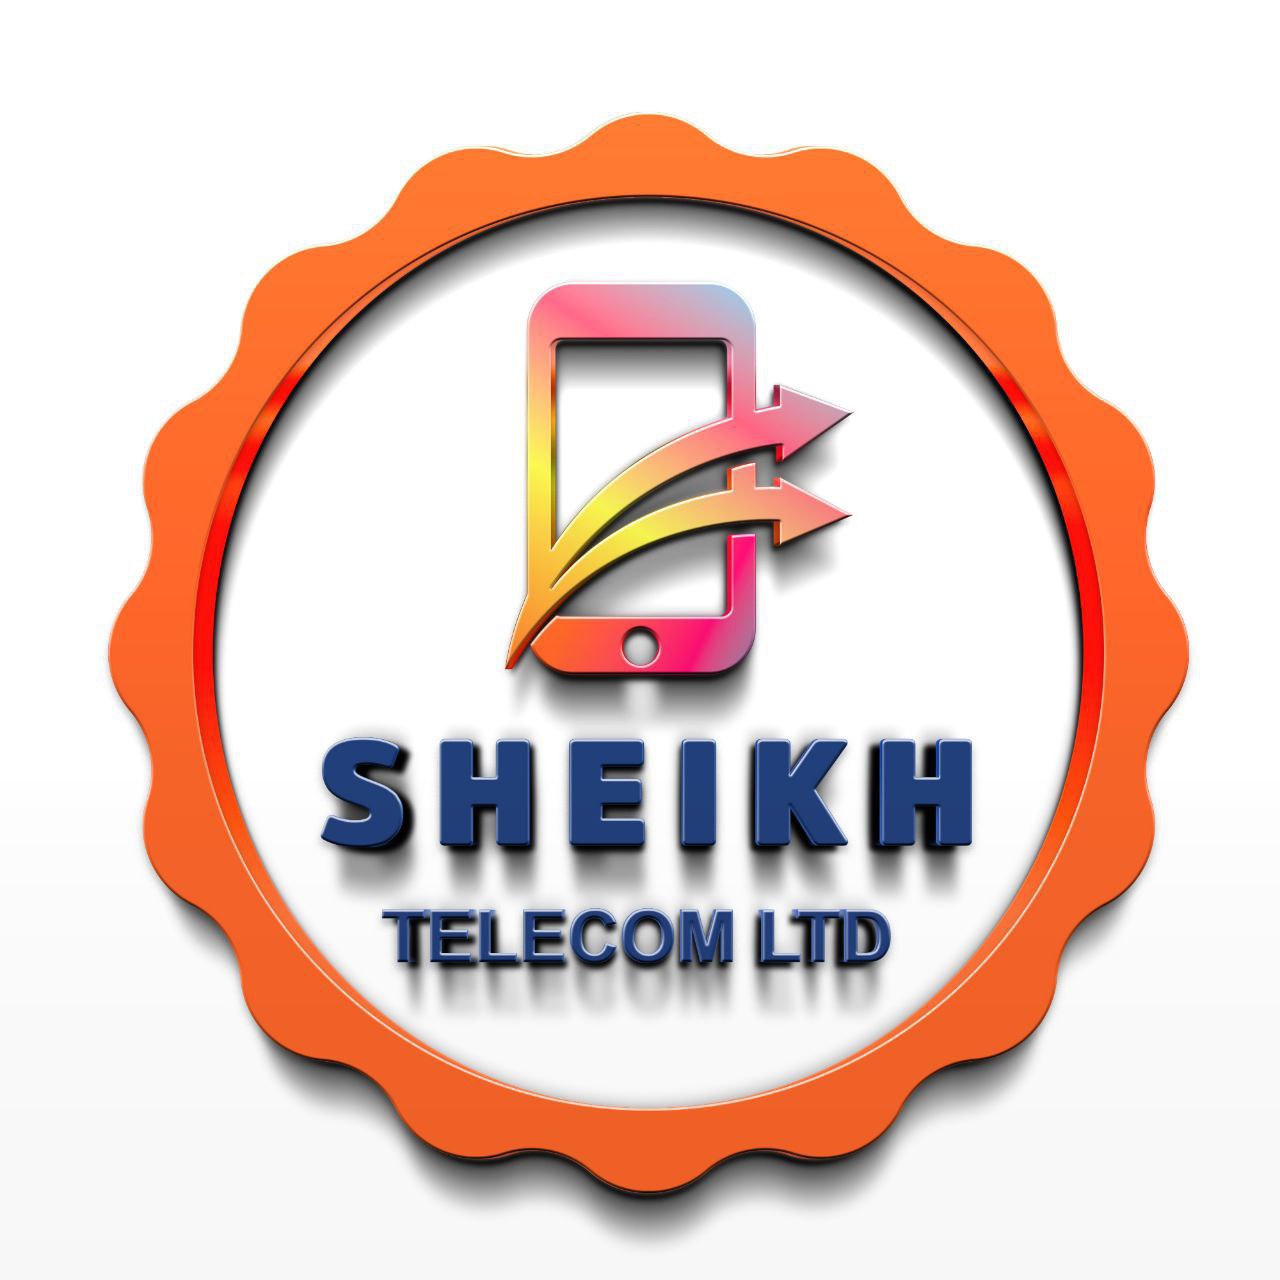 Sheikh Telecom LTD